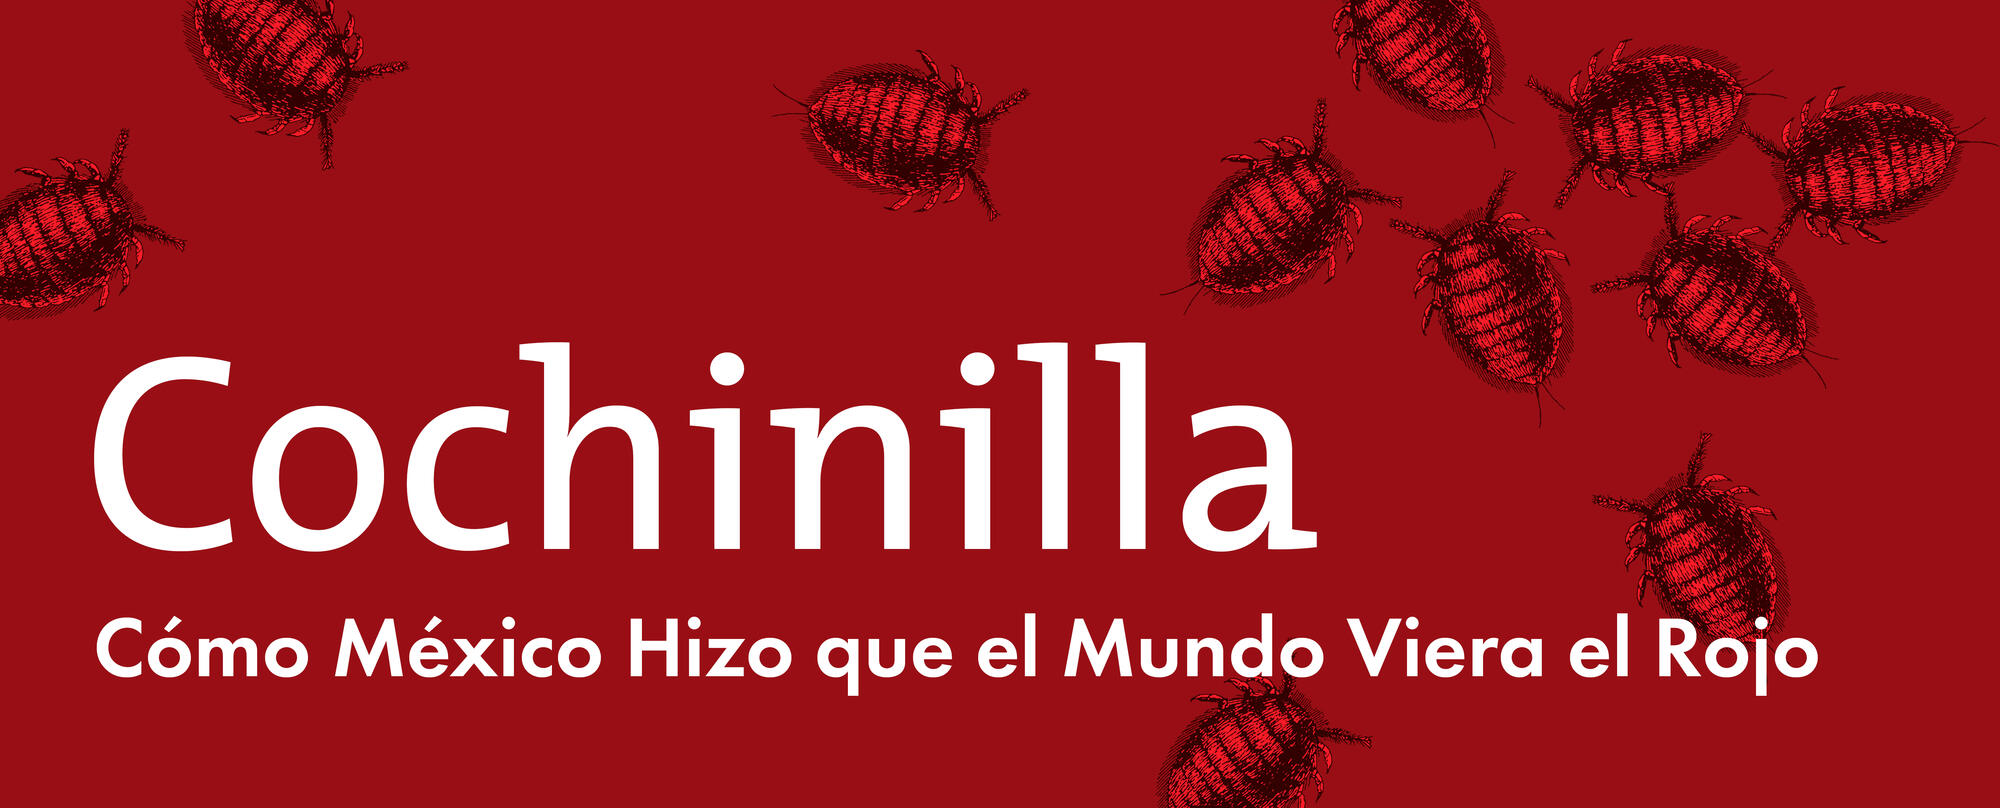 Spanish Text &quot;Cochinilla Cómo México Hizo que el Mundo Viera el Rojo&quot;.